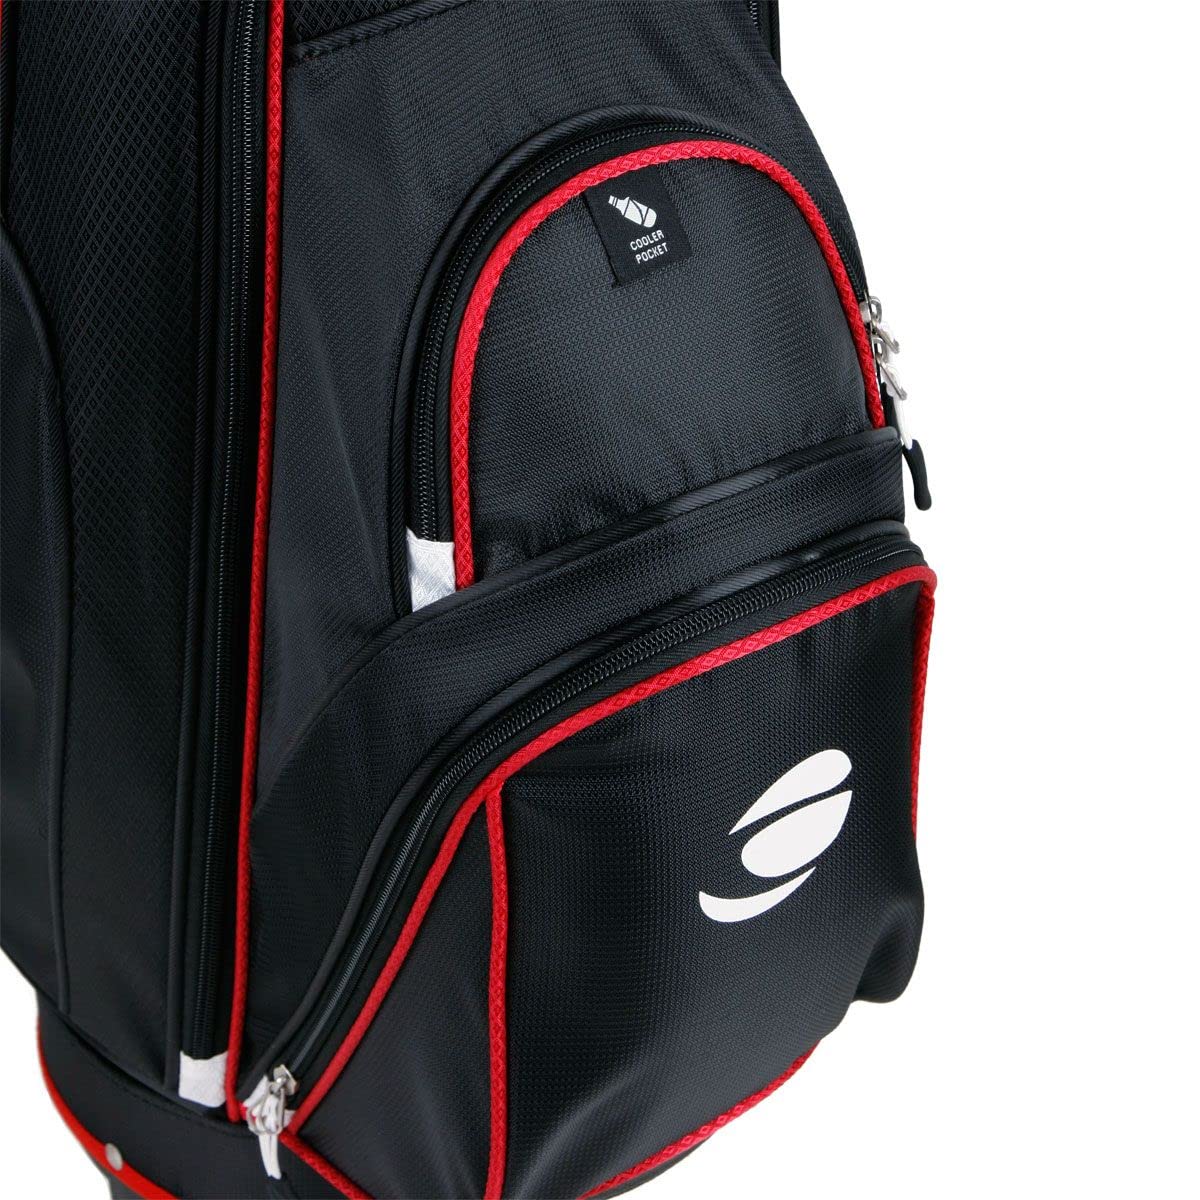 Orlimar CRX 14.6 Golf Cart Bag, 14-Way Divider Top, 6 Zippered Pockets Including Insulated Cooler Pocket